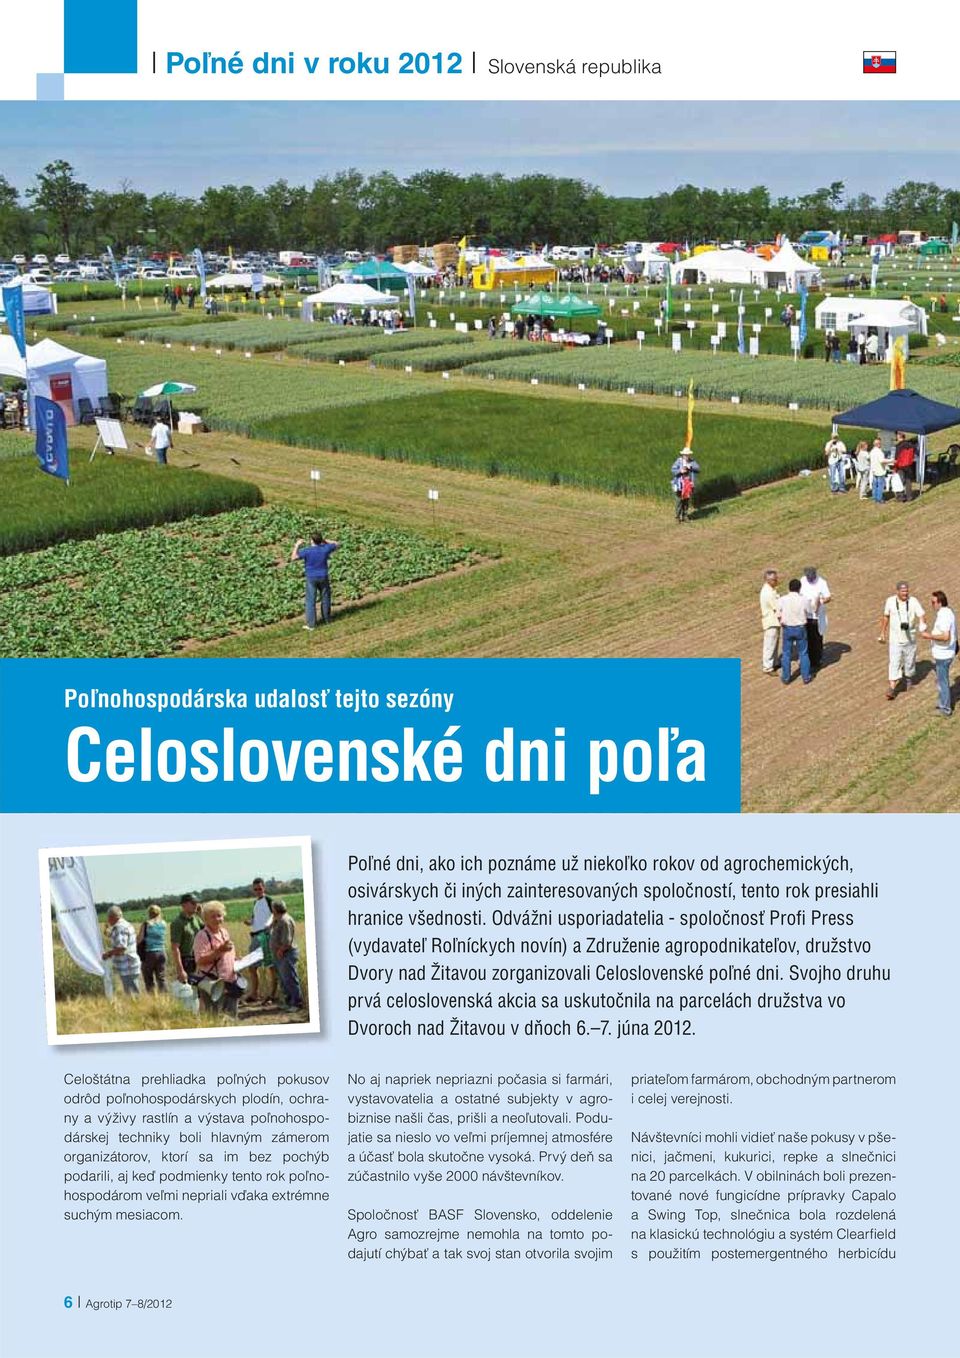 Odvážni usporiadatelia - spoločnosť Profi Press (vydavateľ Roľníckych novín) a Združenie agropodnikateľov, družstvo Dvory nad Žitavou zorganizovali Celoslovenské poľné dni.